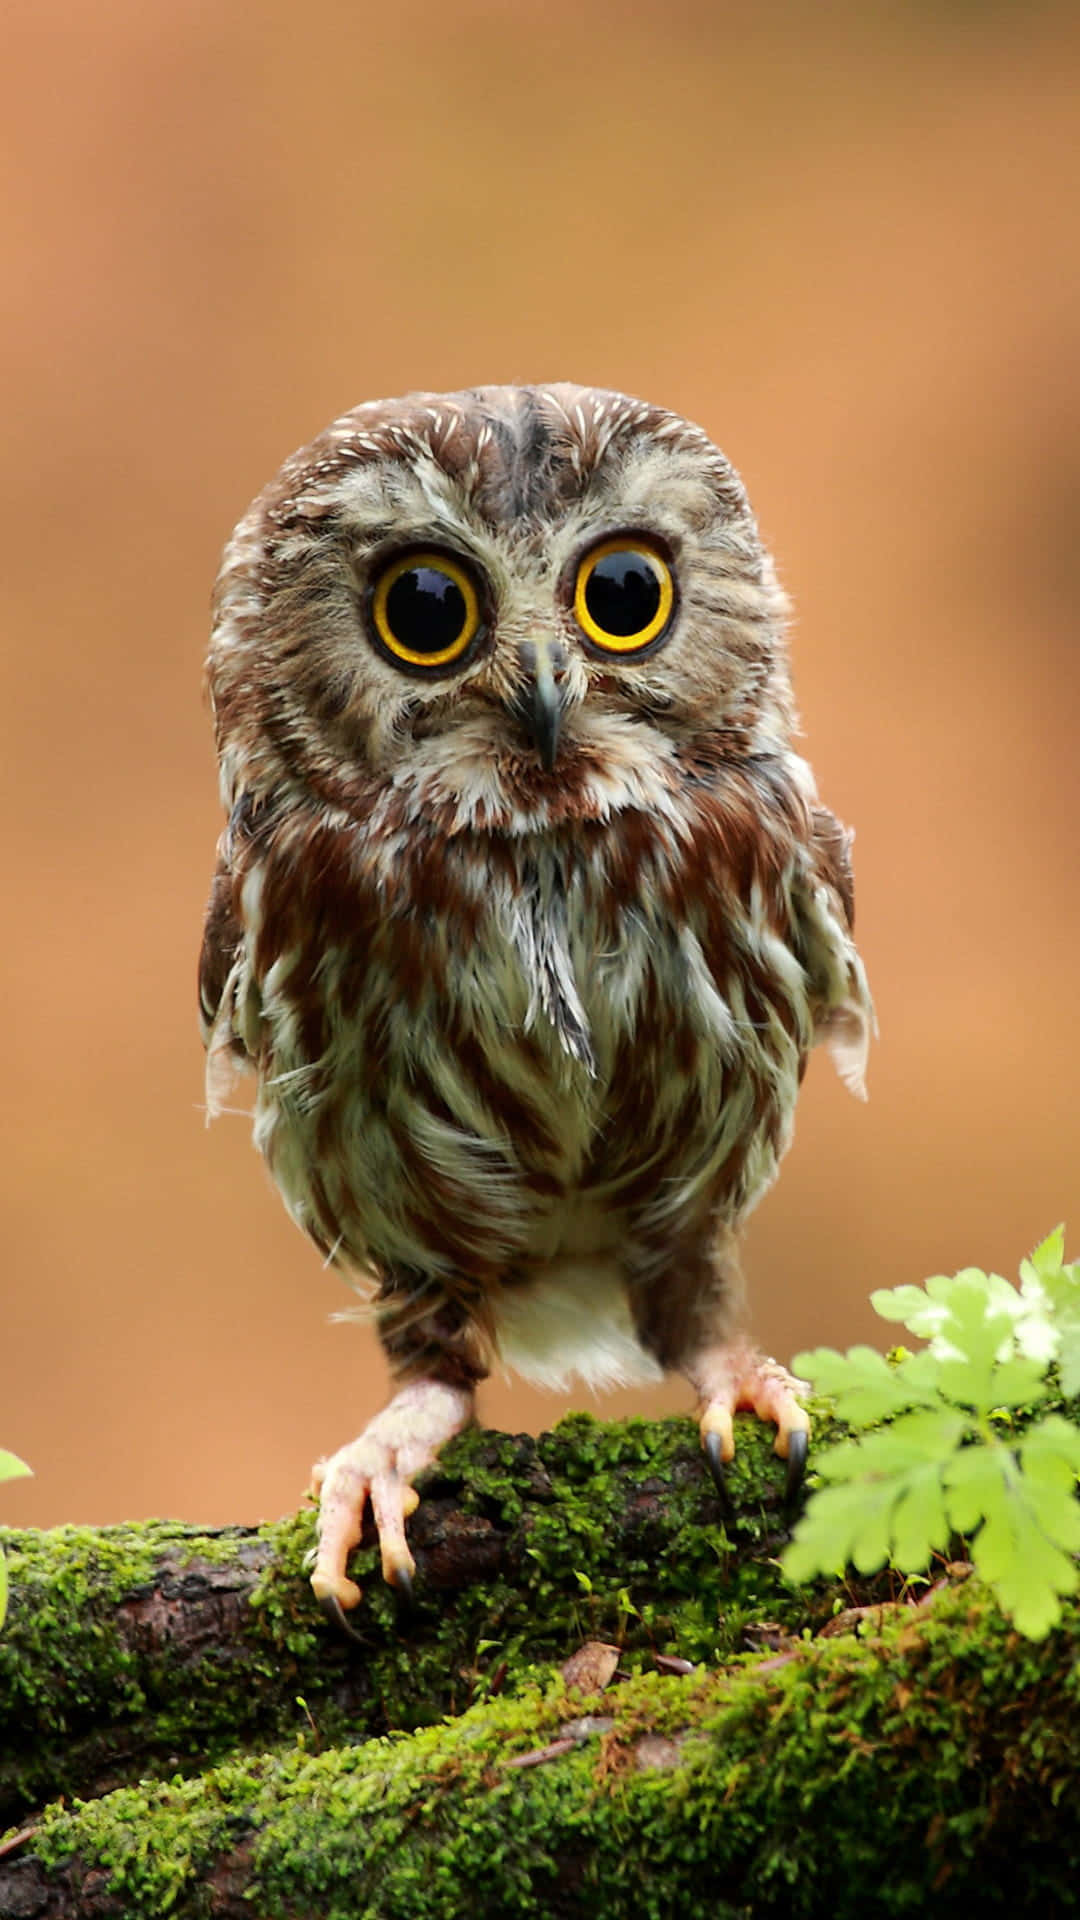 Enchanting Gaze Of A Beautiful Owl